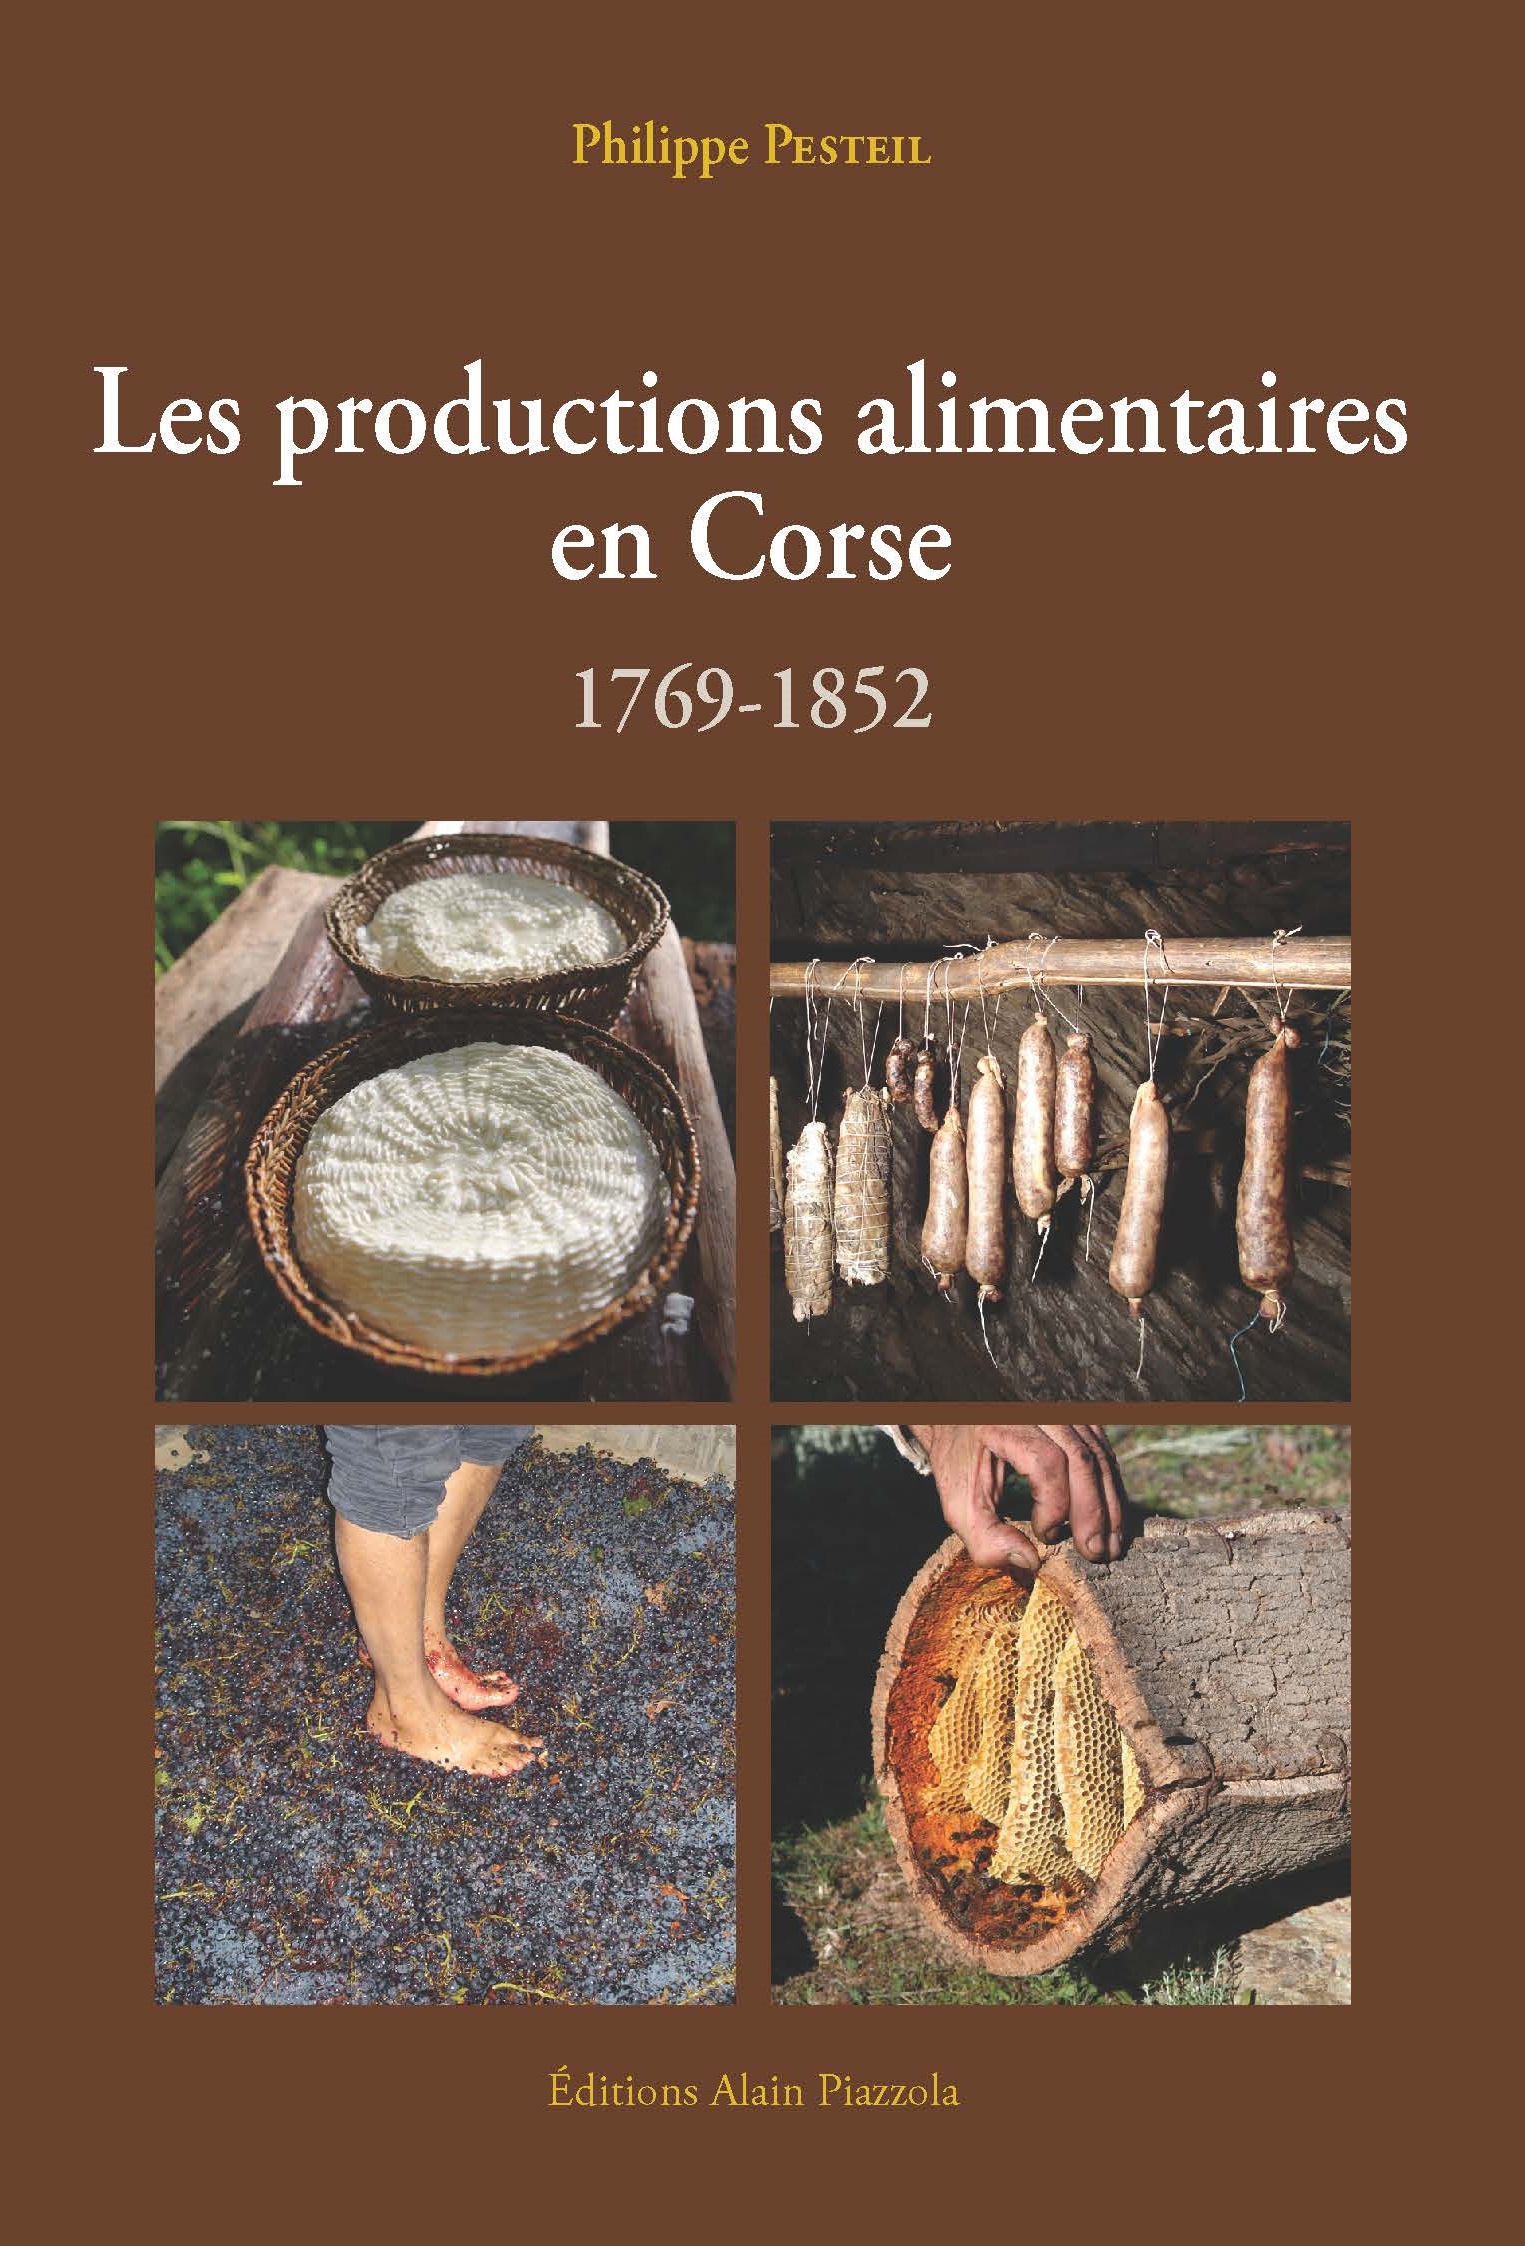 >Les productions alimentaires en Corse (1769-1852)